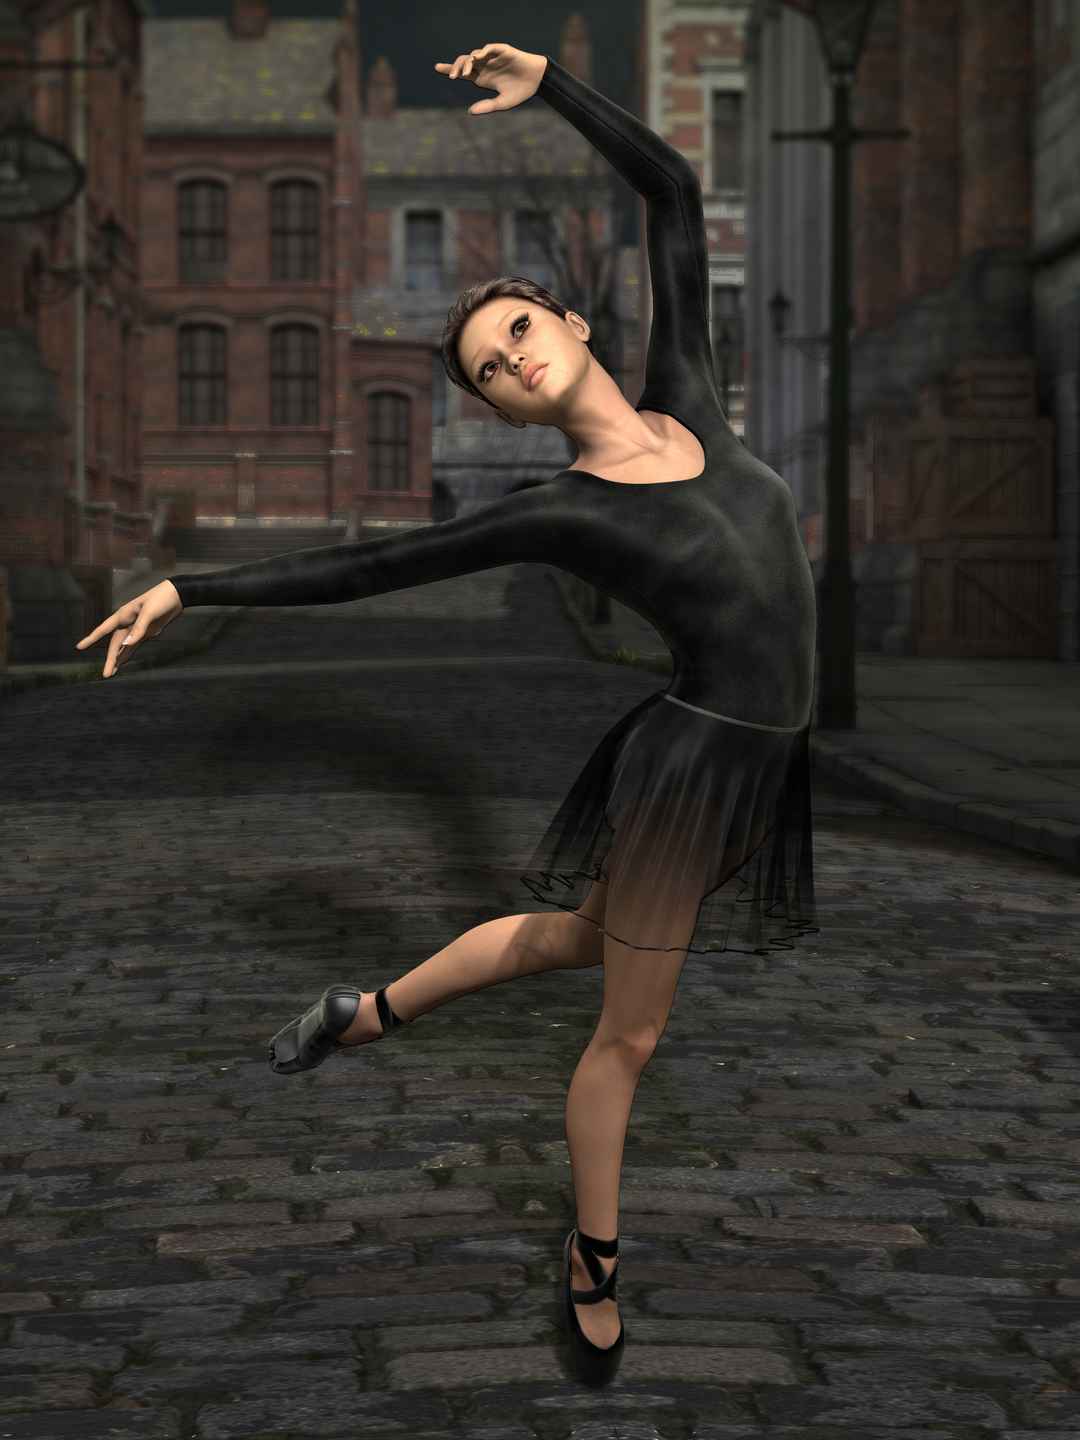 芭蕾舞 美女街道艺术 图片